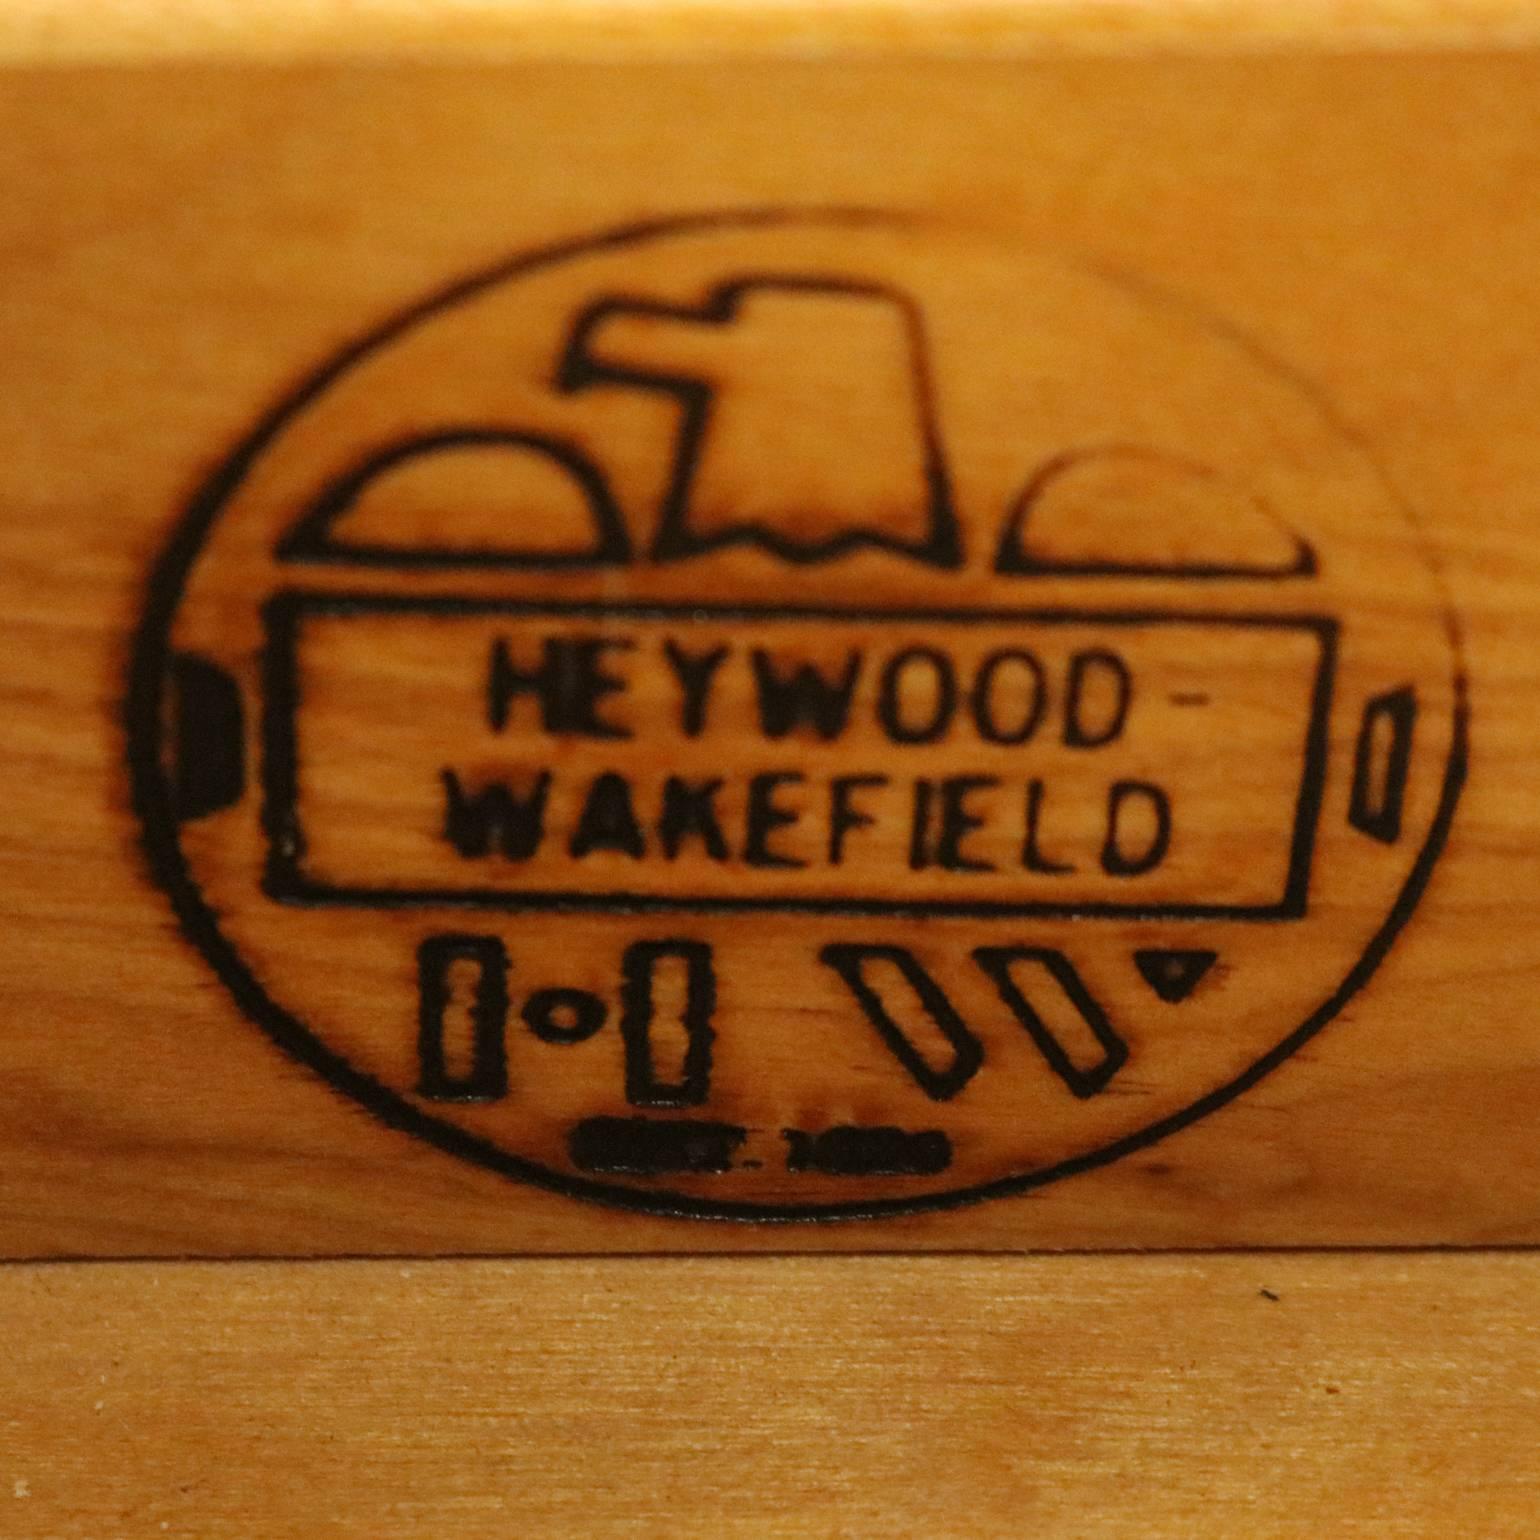 heywood wakefield kohinoor